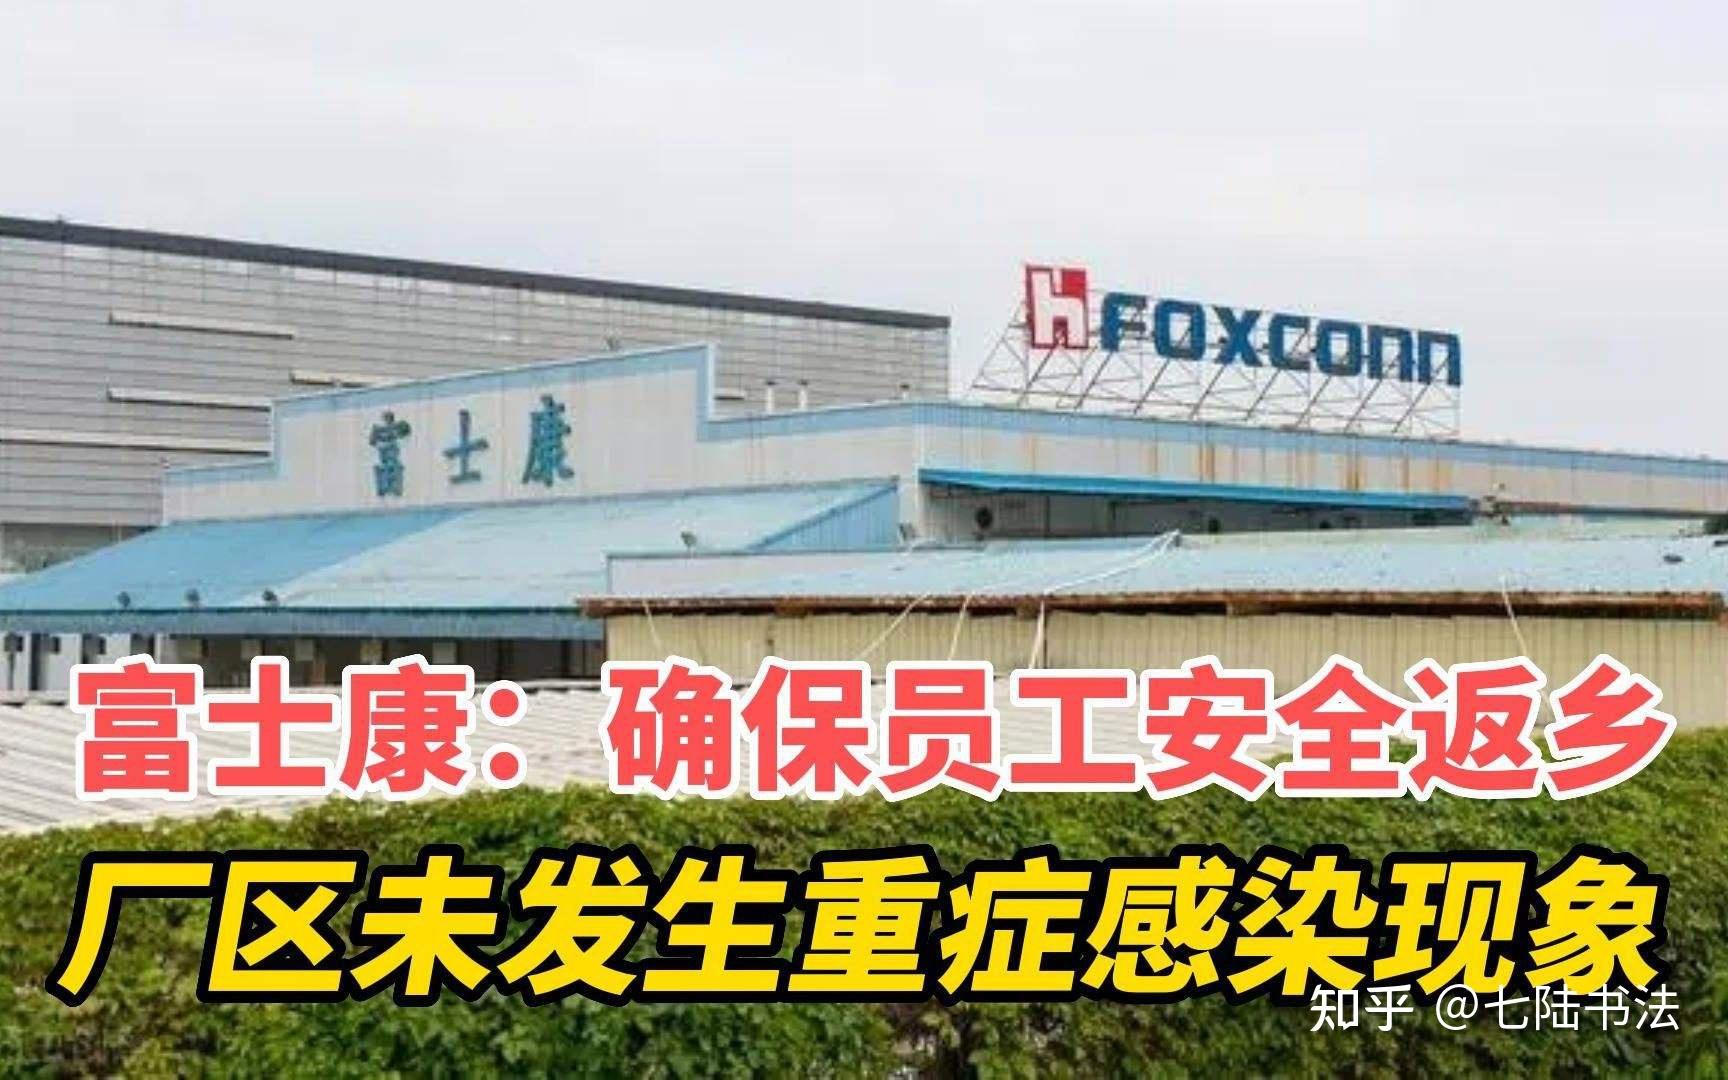 “再造一个新富士康” 富士康新事业总部在郑州揭牌成立-新闻-上海证券报·中国证券网